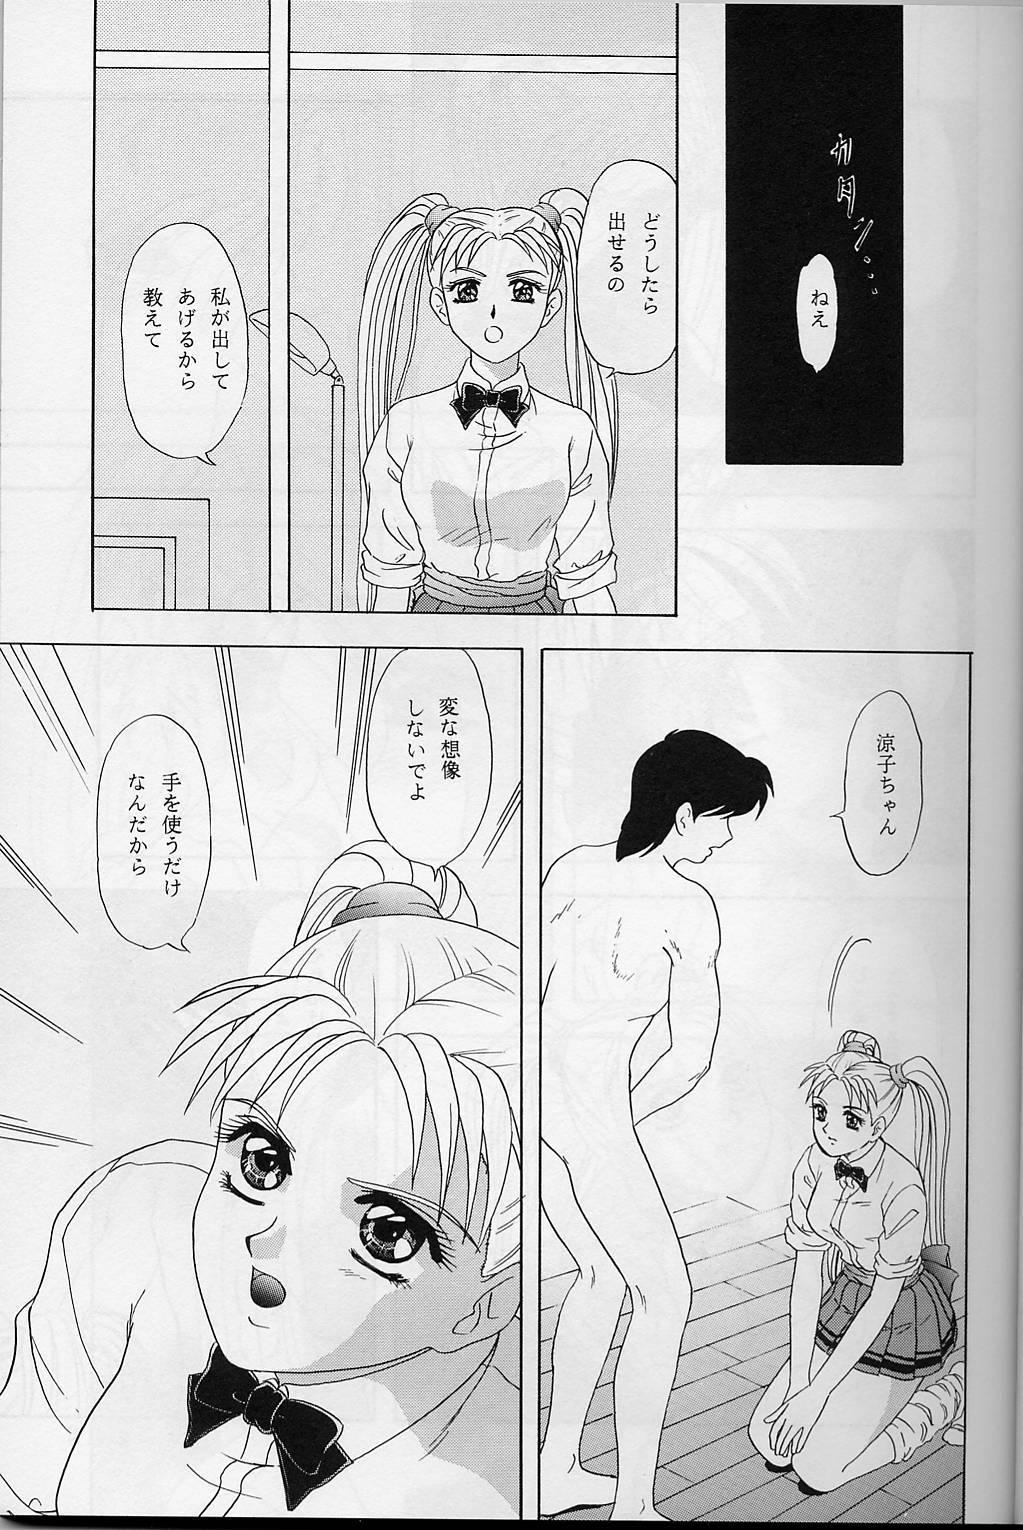 Bathroom Lunch Box 32 - Toshishita no Onnanoko 3 - Kakyuusei Couple Sex - Page 6